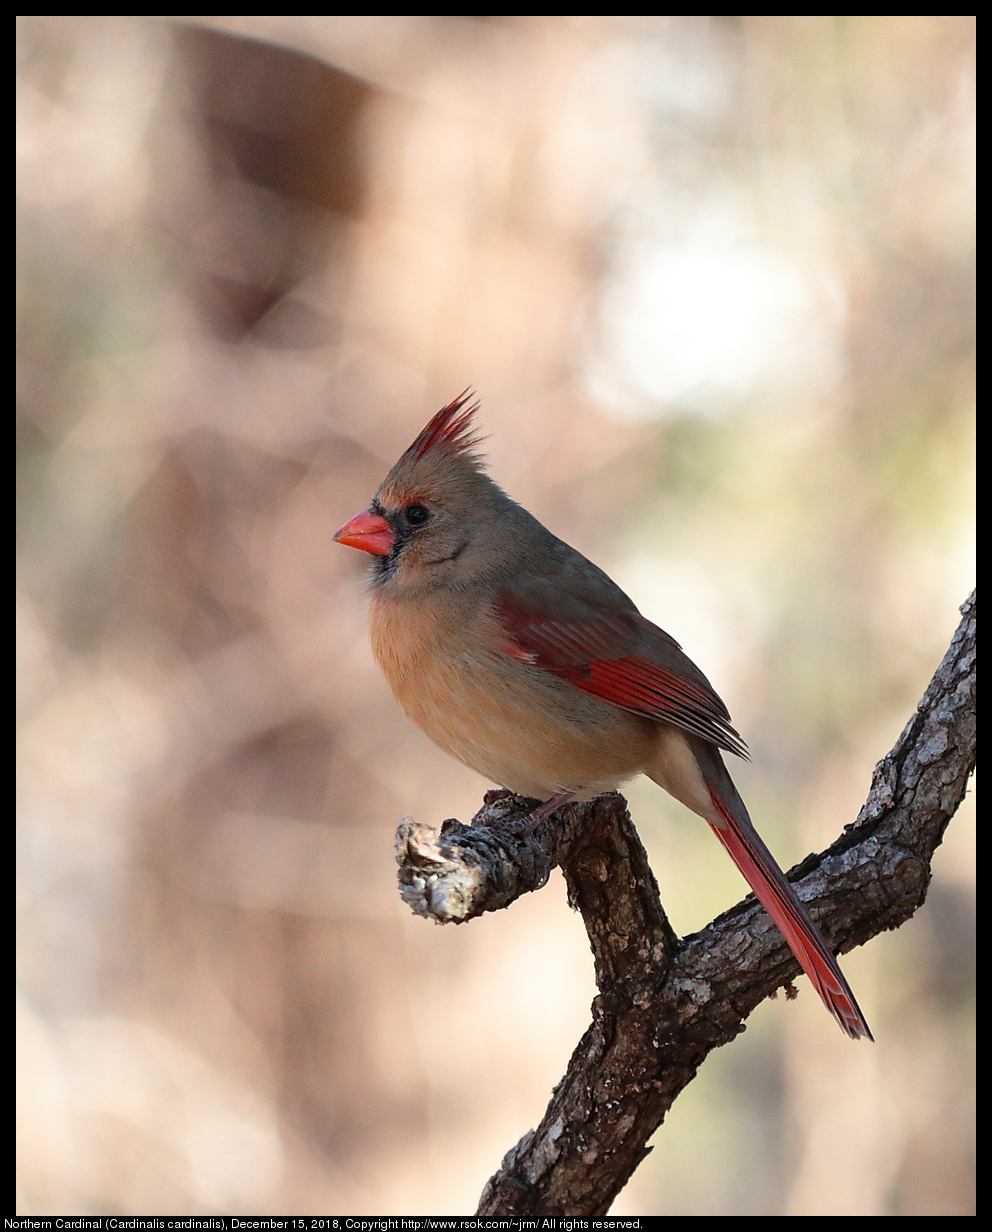 Northern Cardinal (Cardinalis cardinalis), December 15, 2018